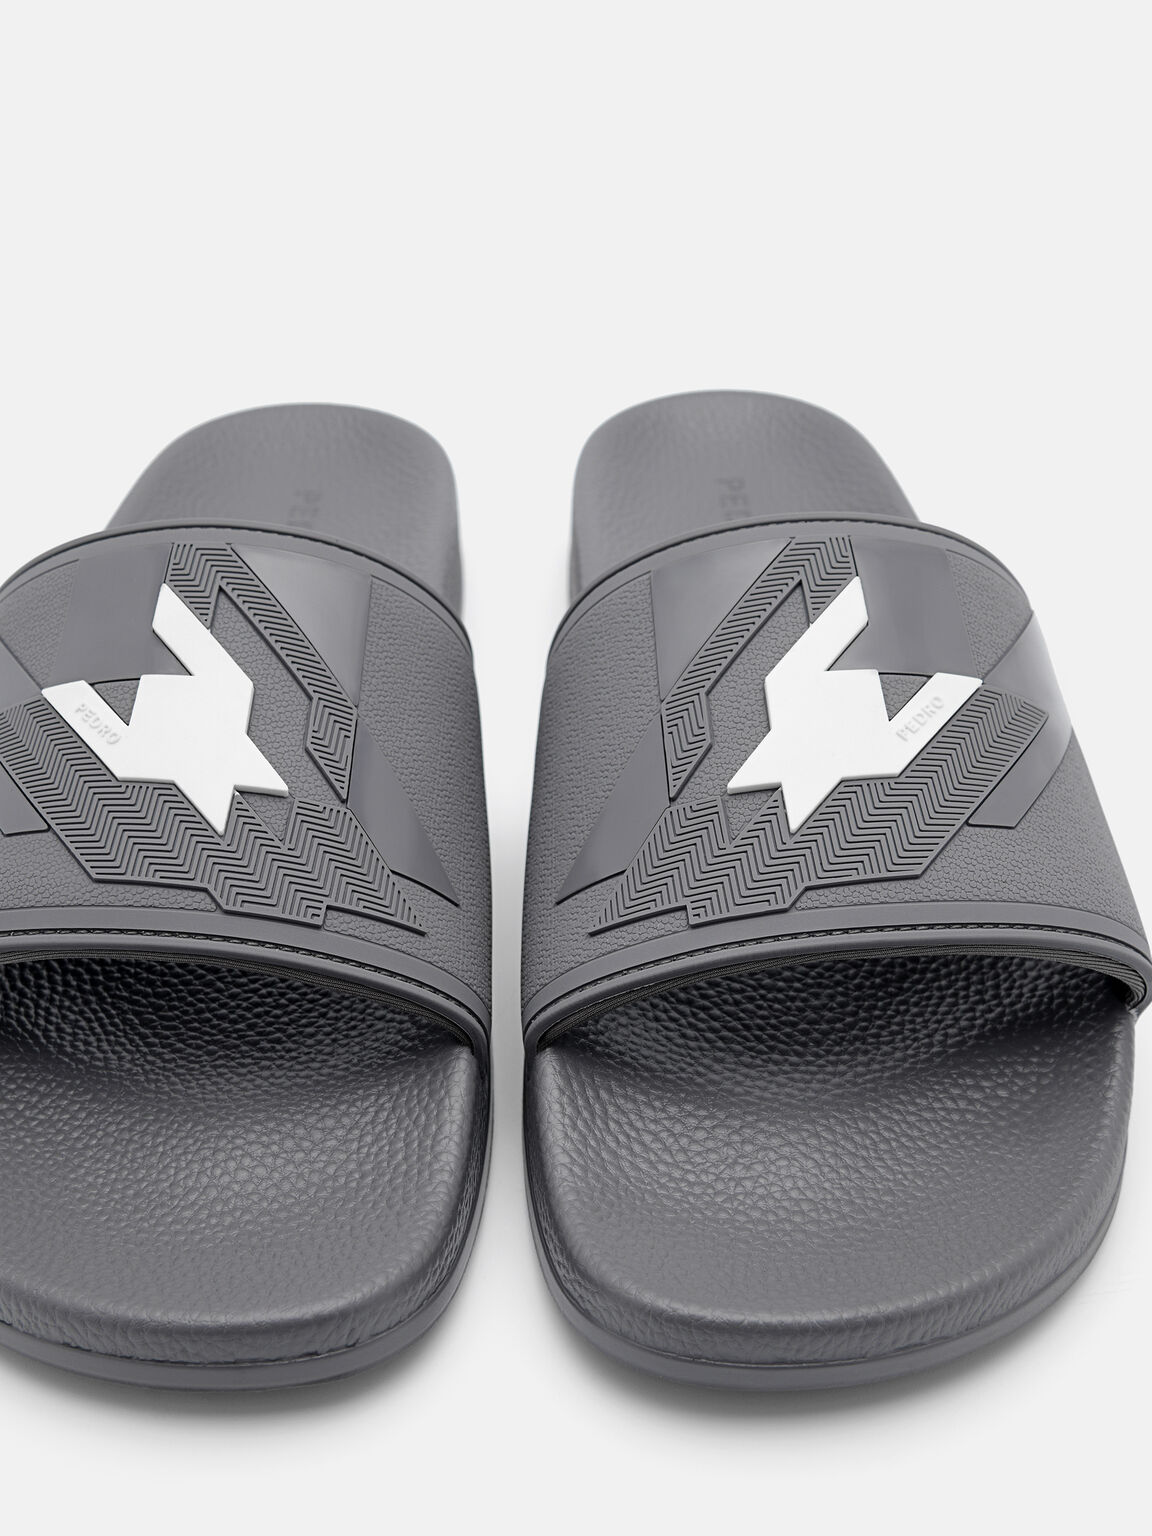 Houndstooth Slide Sandals, Grey